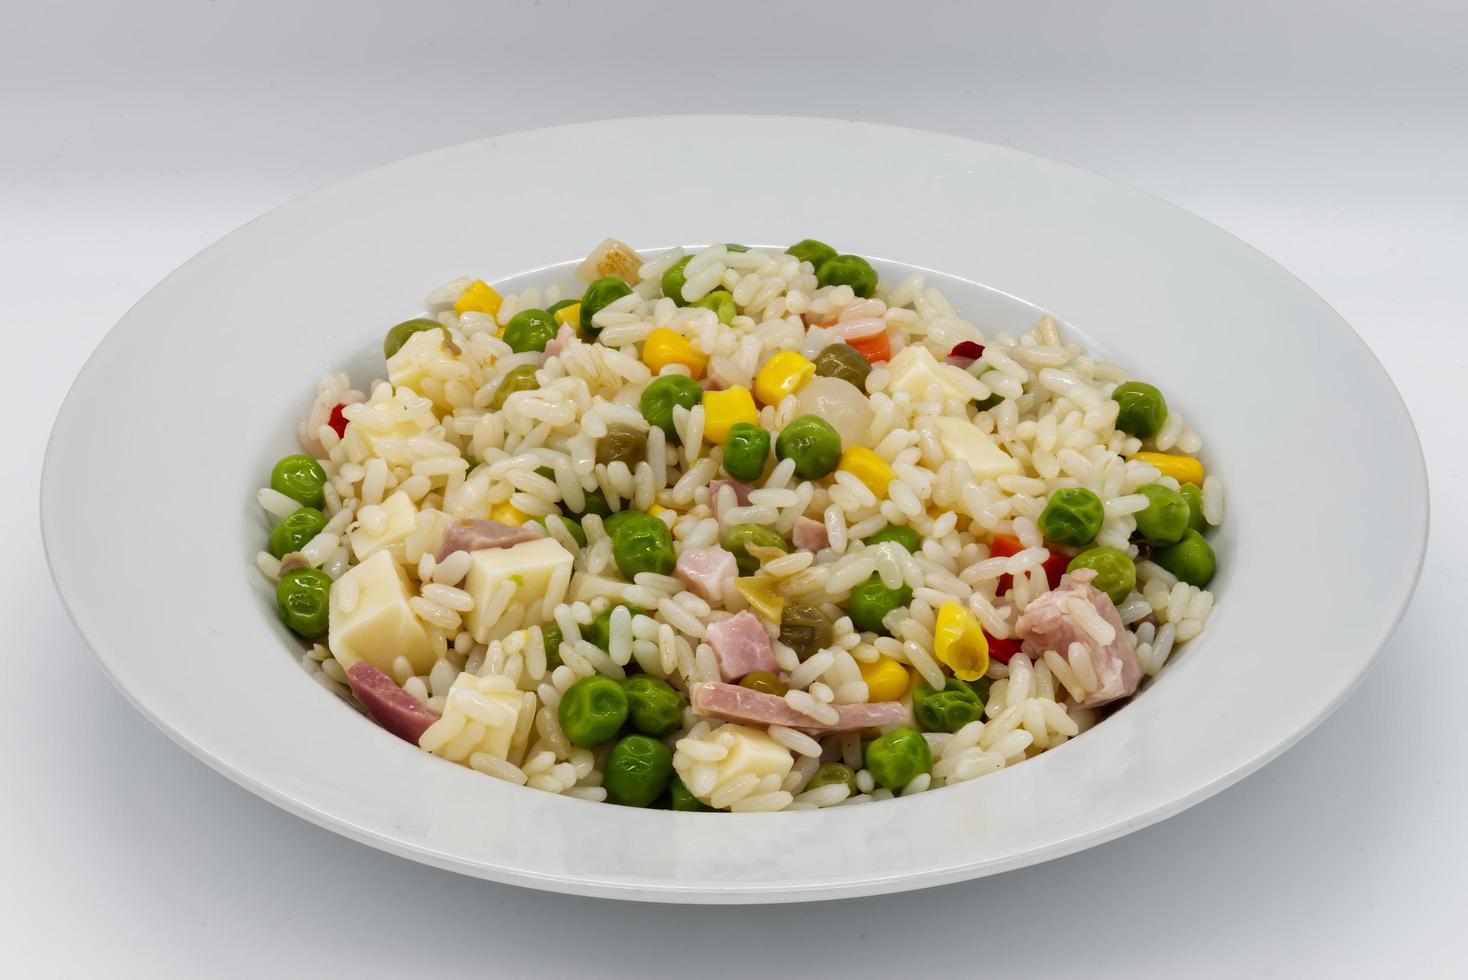 Ensalada italiana de arroz frío, riso freddo. ensalada de verano fresca y saludable sobre fondo blanco. foto